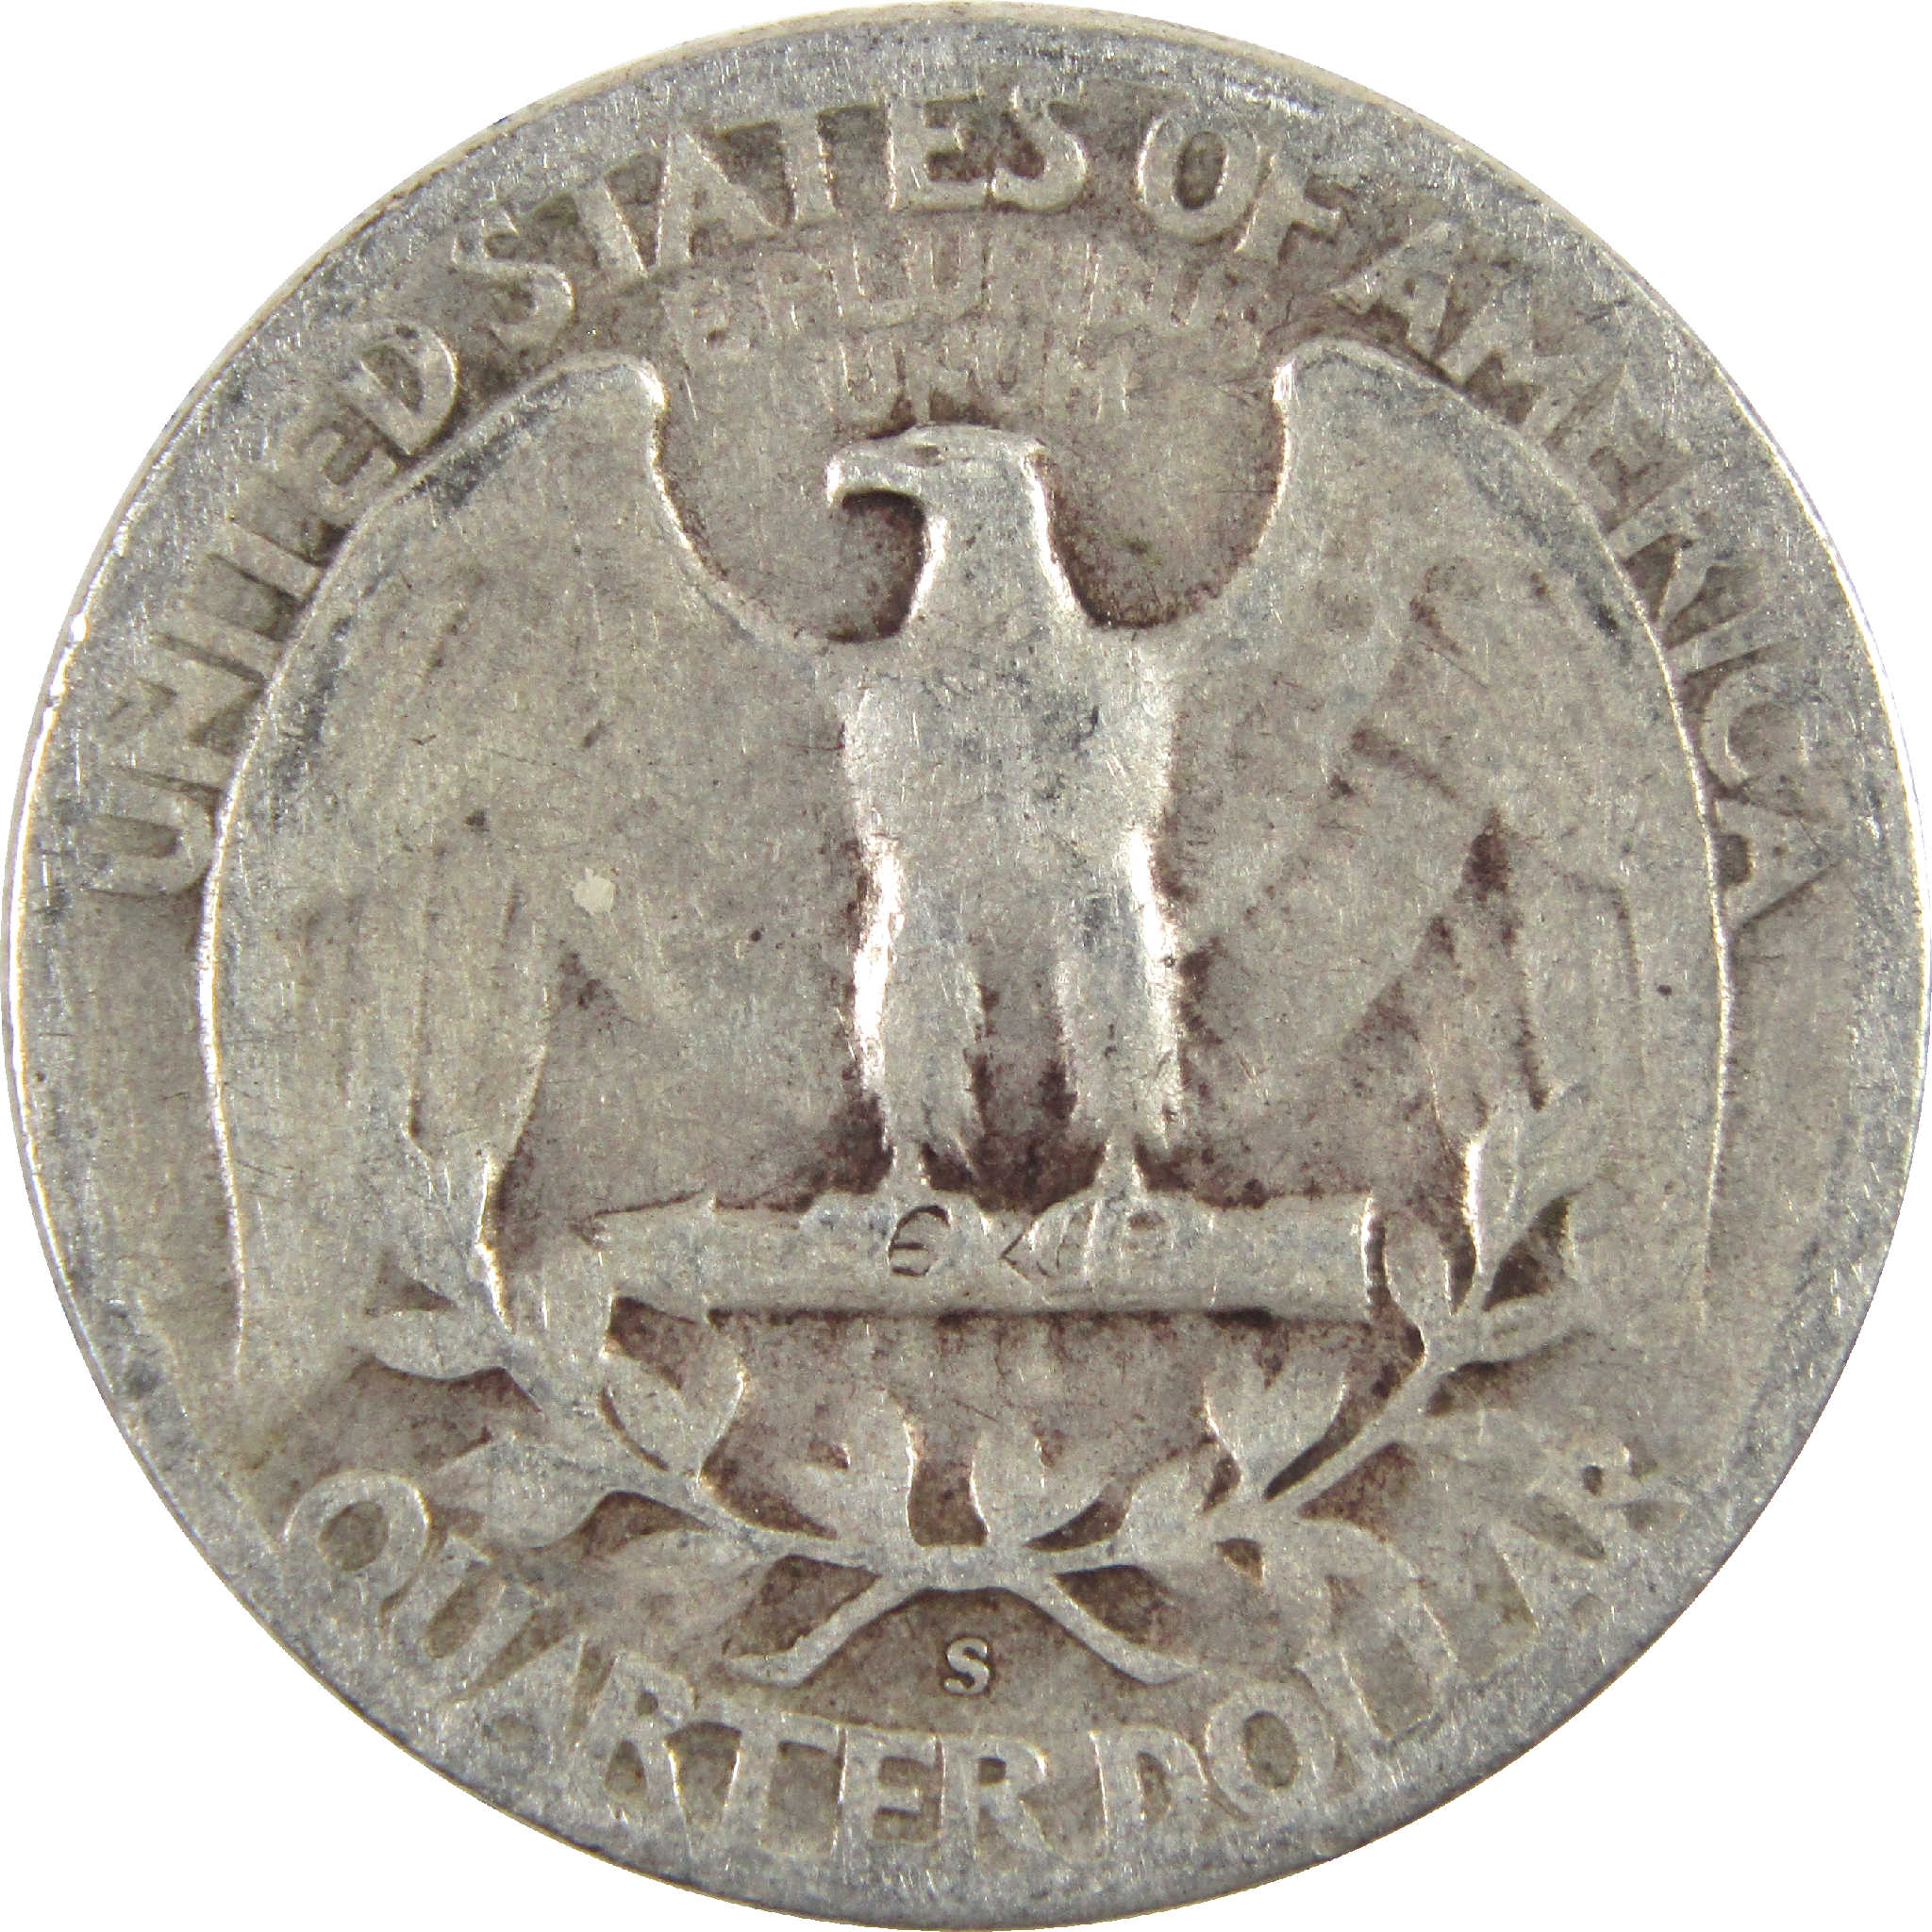 1946 S Washington Quarter AG About Good Silver 25c Coin